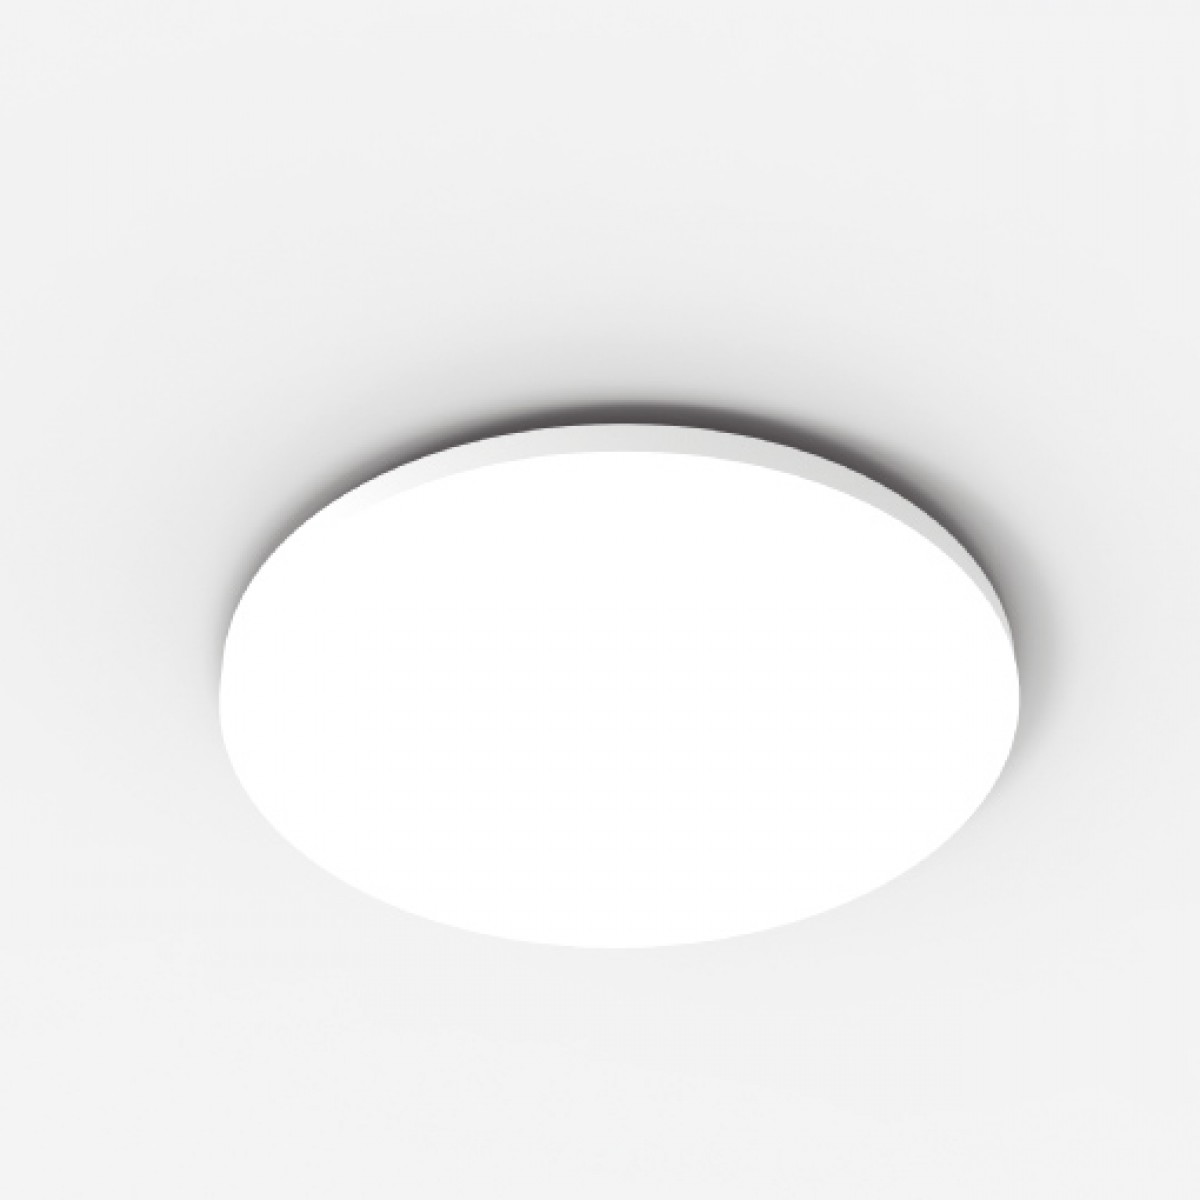 Rozeta decorativa pentru LED QR002, Dimensiuni: Diam. 51.5 cm (H: 5 cm), Mardom Decor, Rozete decorative 